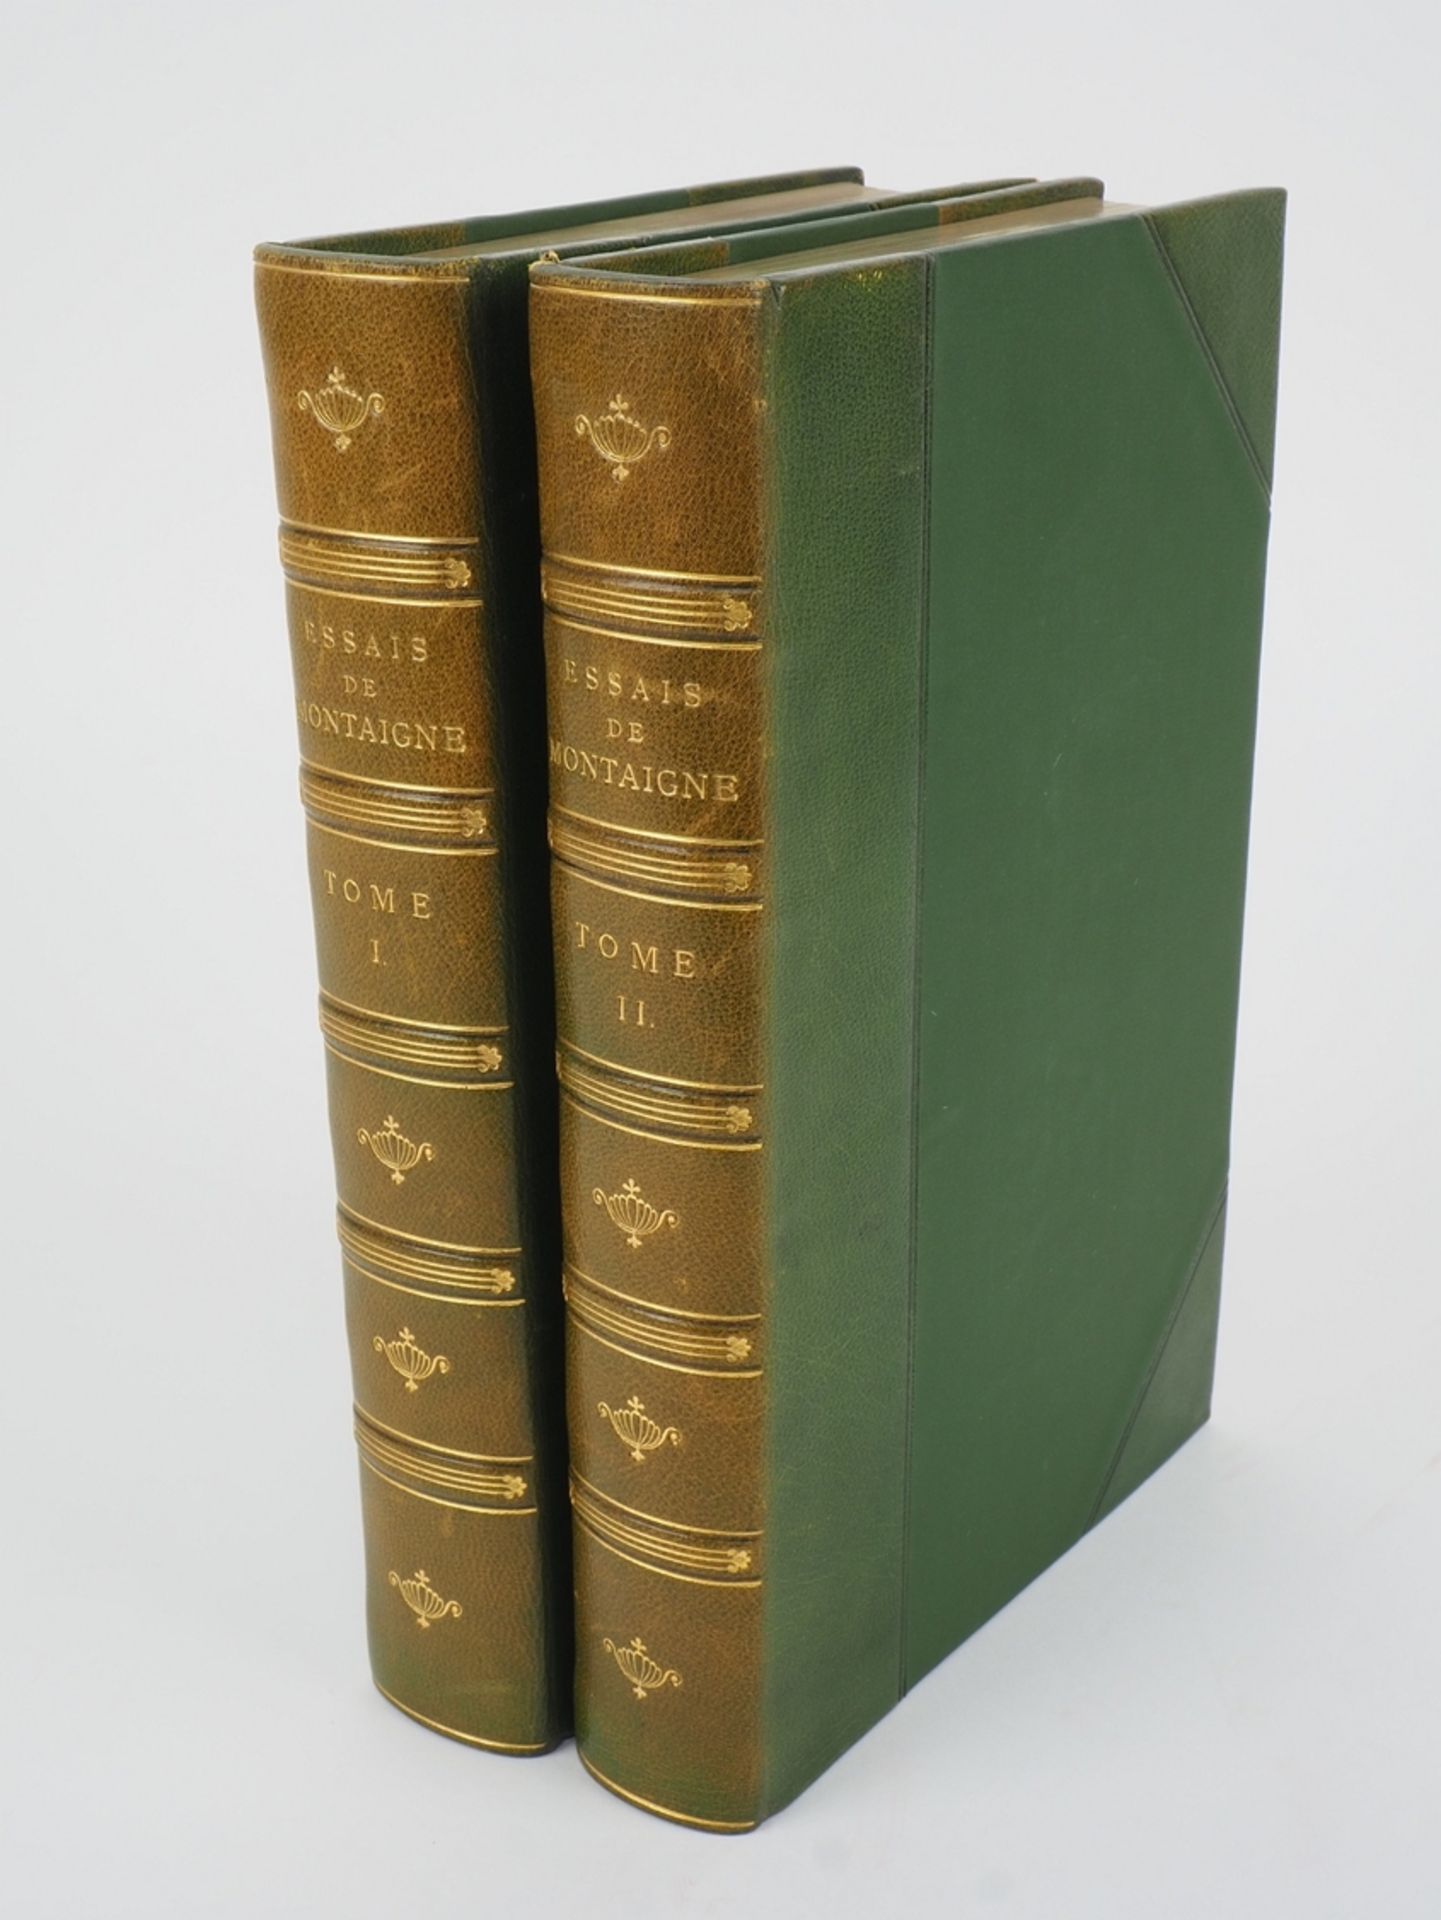 Michel de Montaigne - Essais, 2 volumes (of 4), 1865.